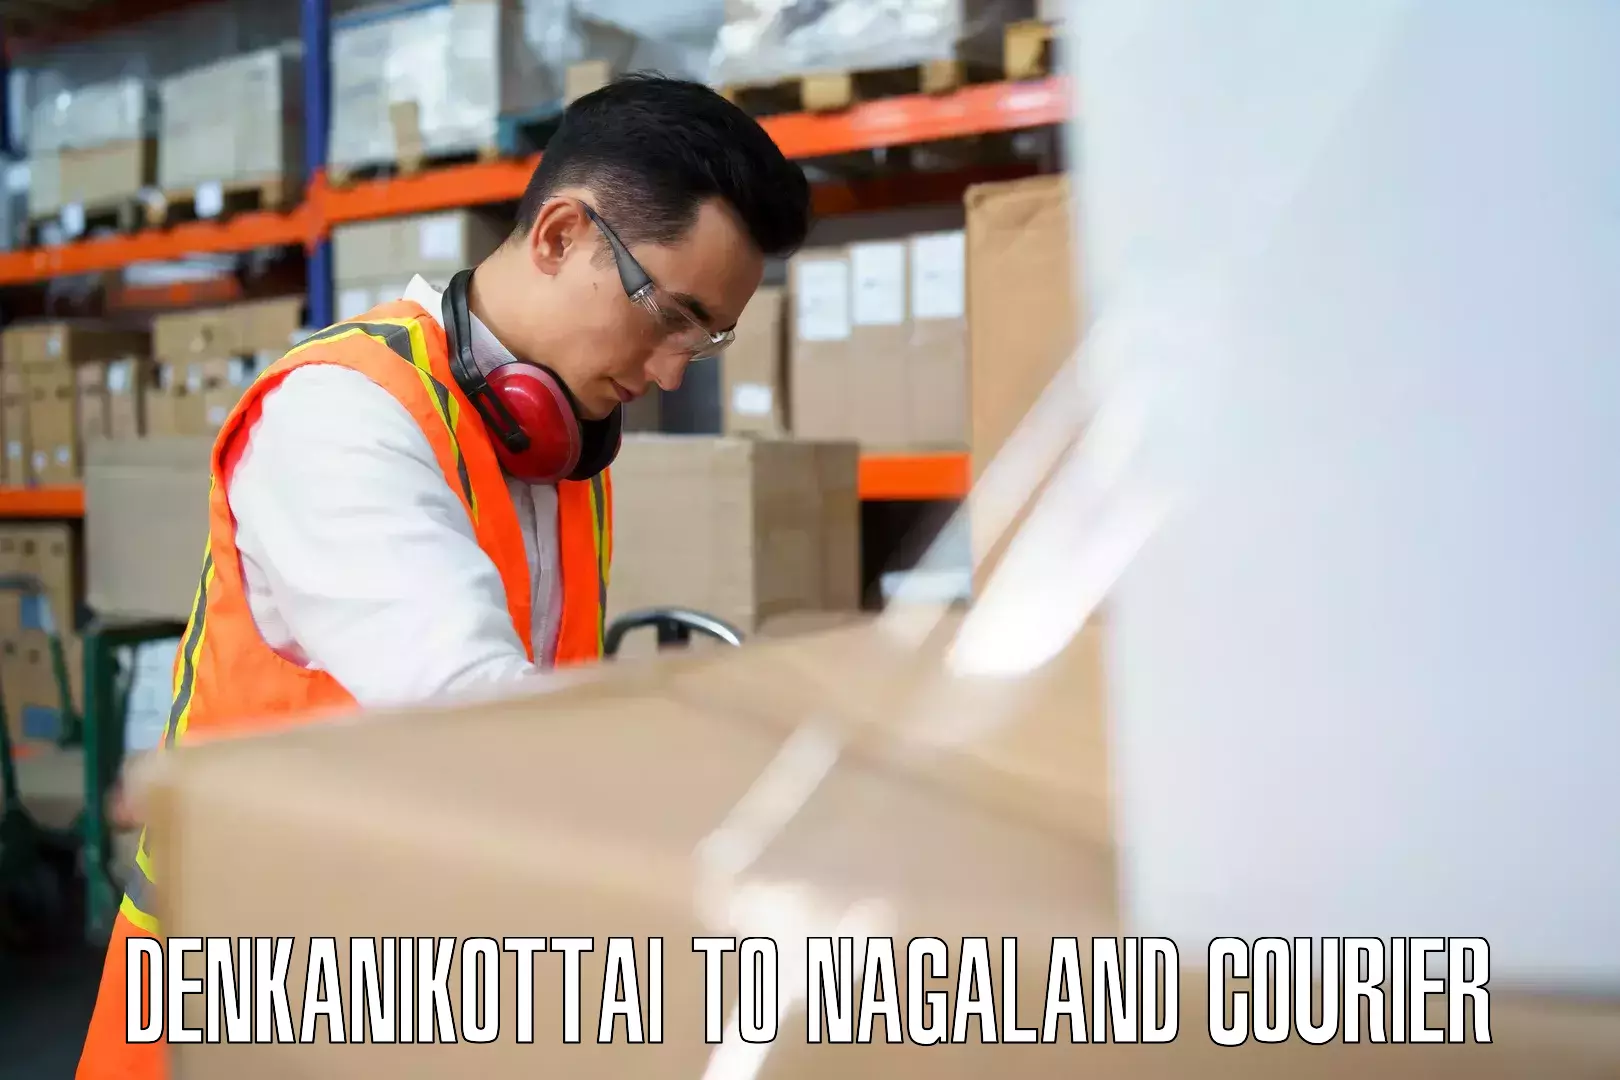 Baggage courier strategy Denkanikottai to NIT Nagaland